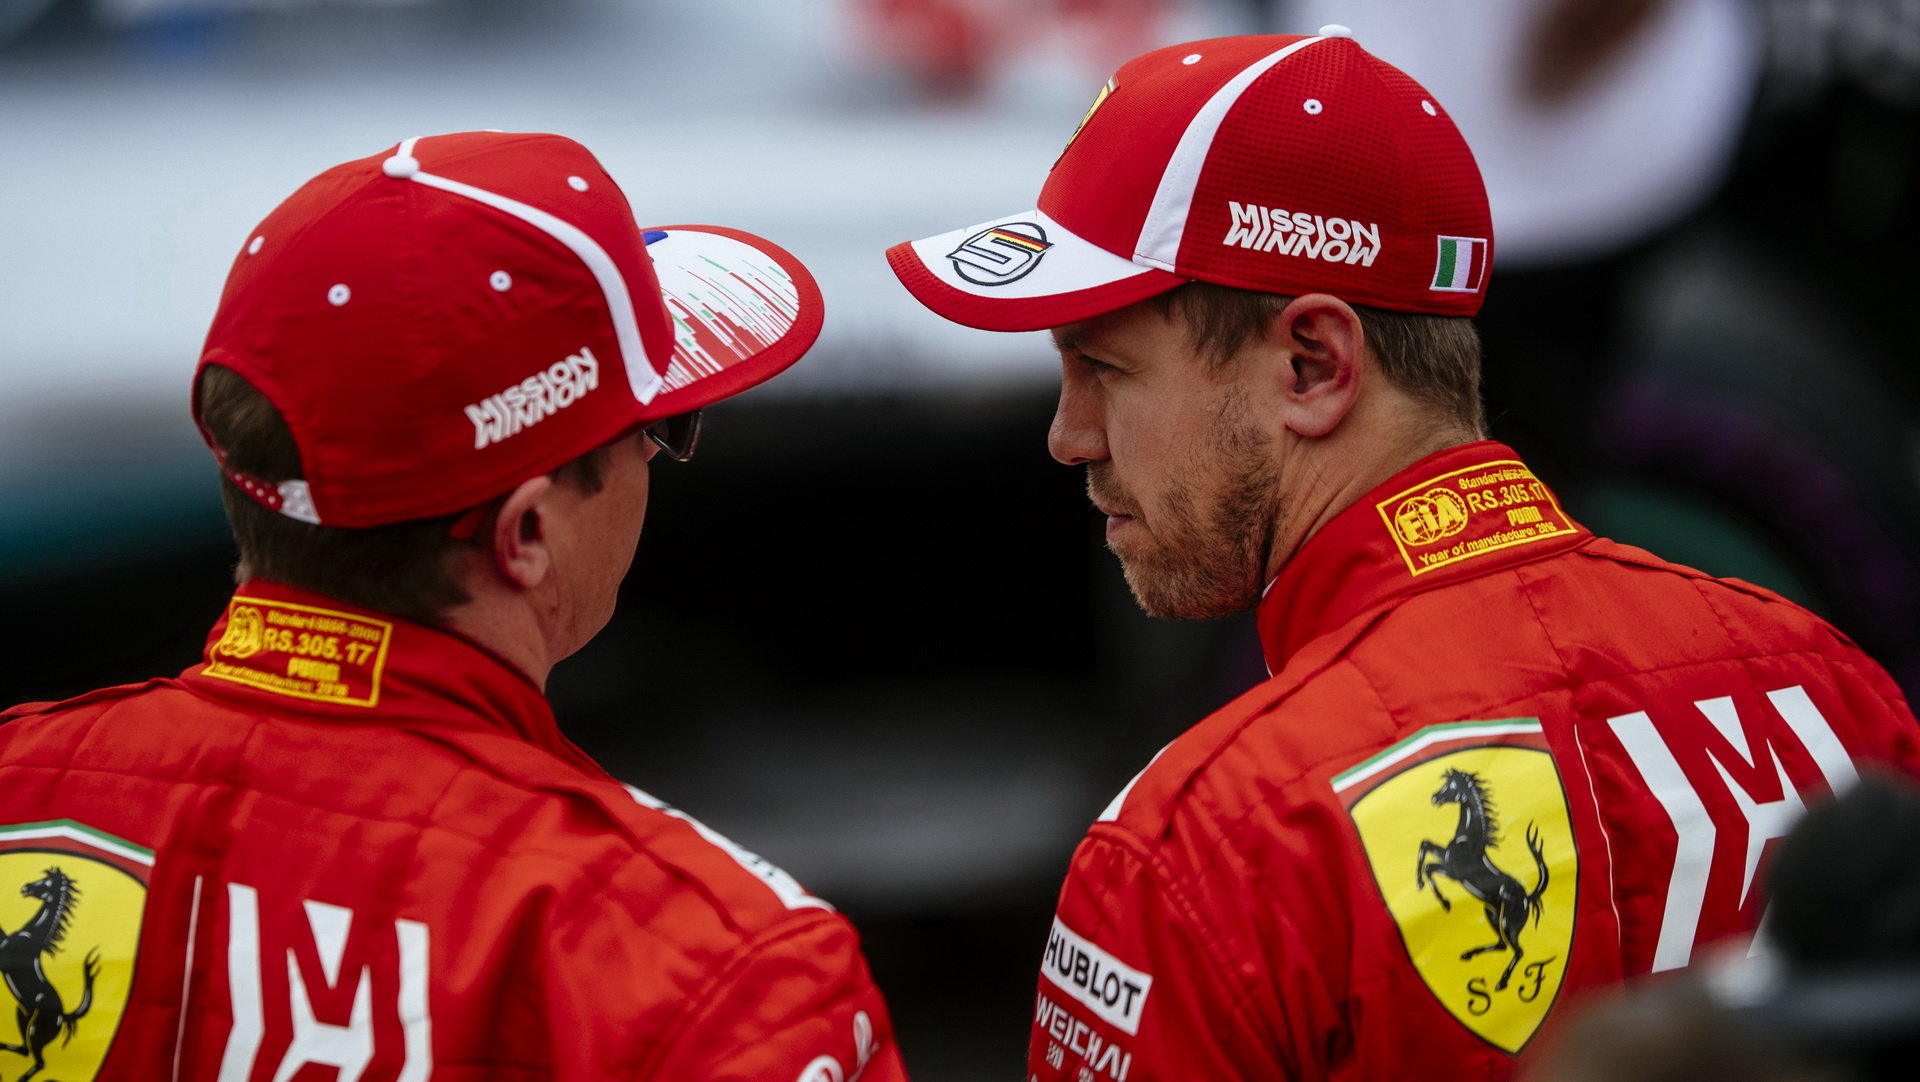 Dopustil se Vettel během tréninku školácké chyby?